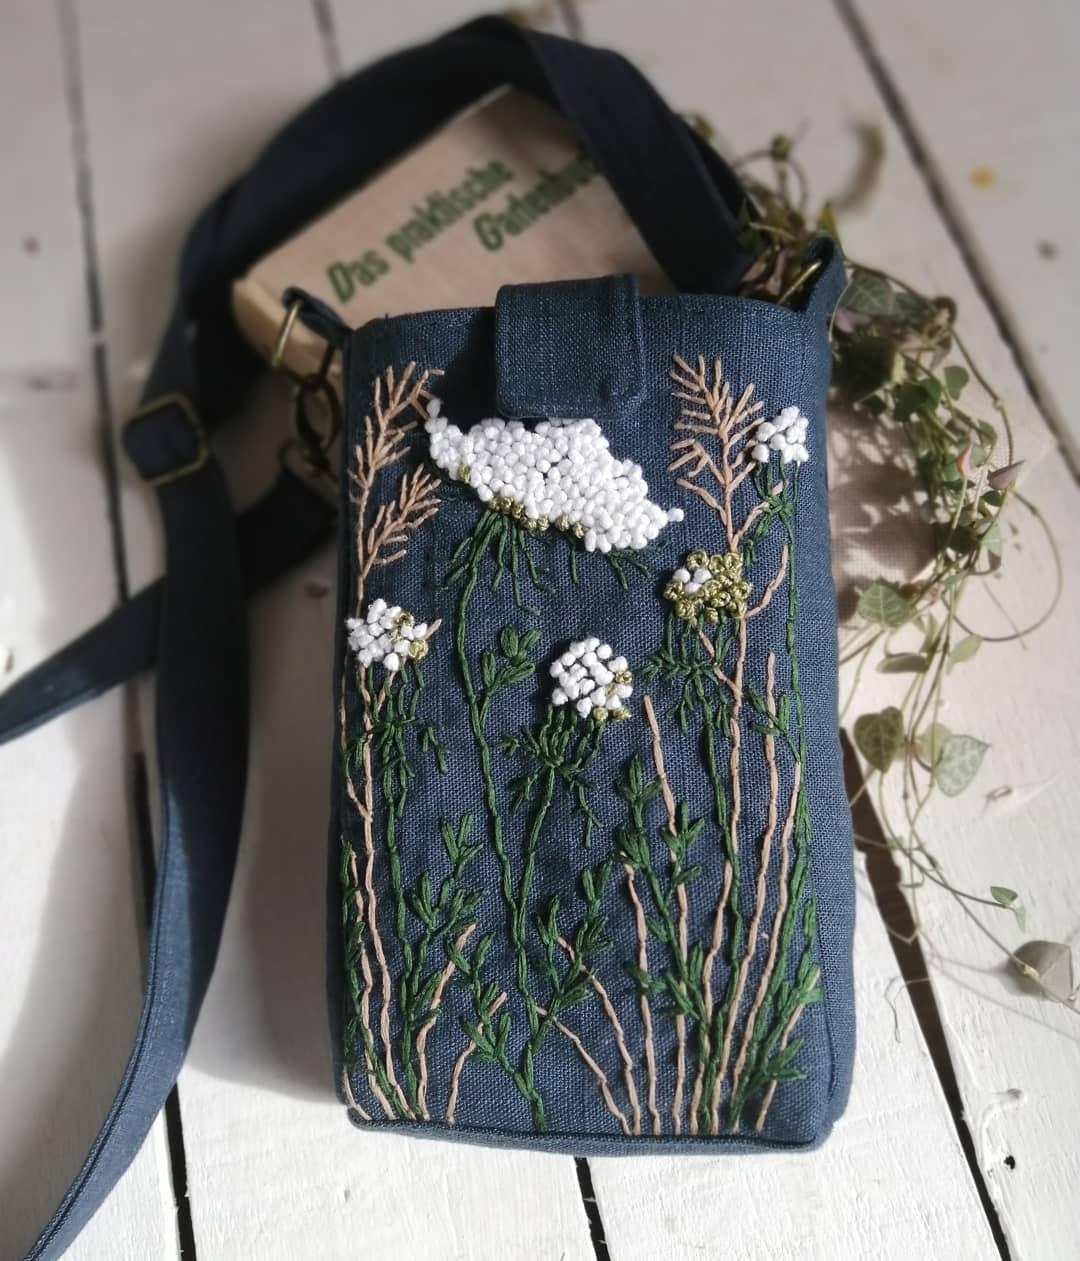 Botanik auf der Tasche🌿
#botanicalembroidery #handmade #bohostyling #sewlove #handbestickt #fashion